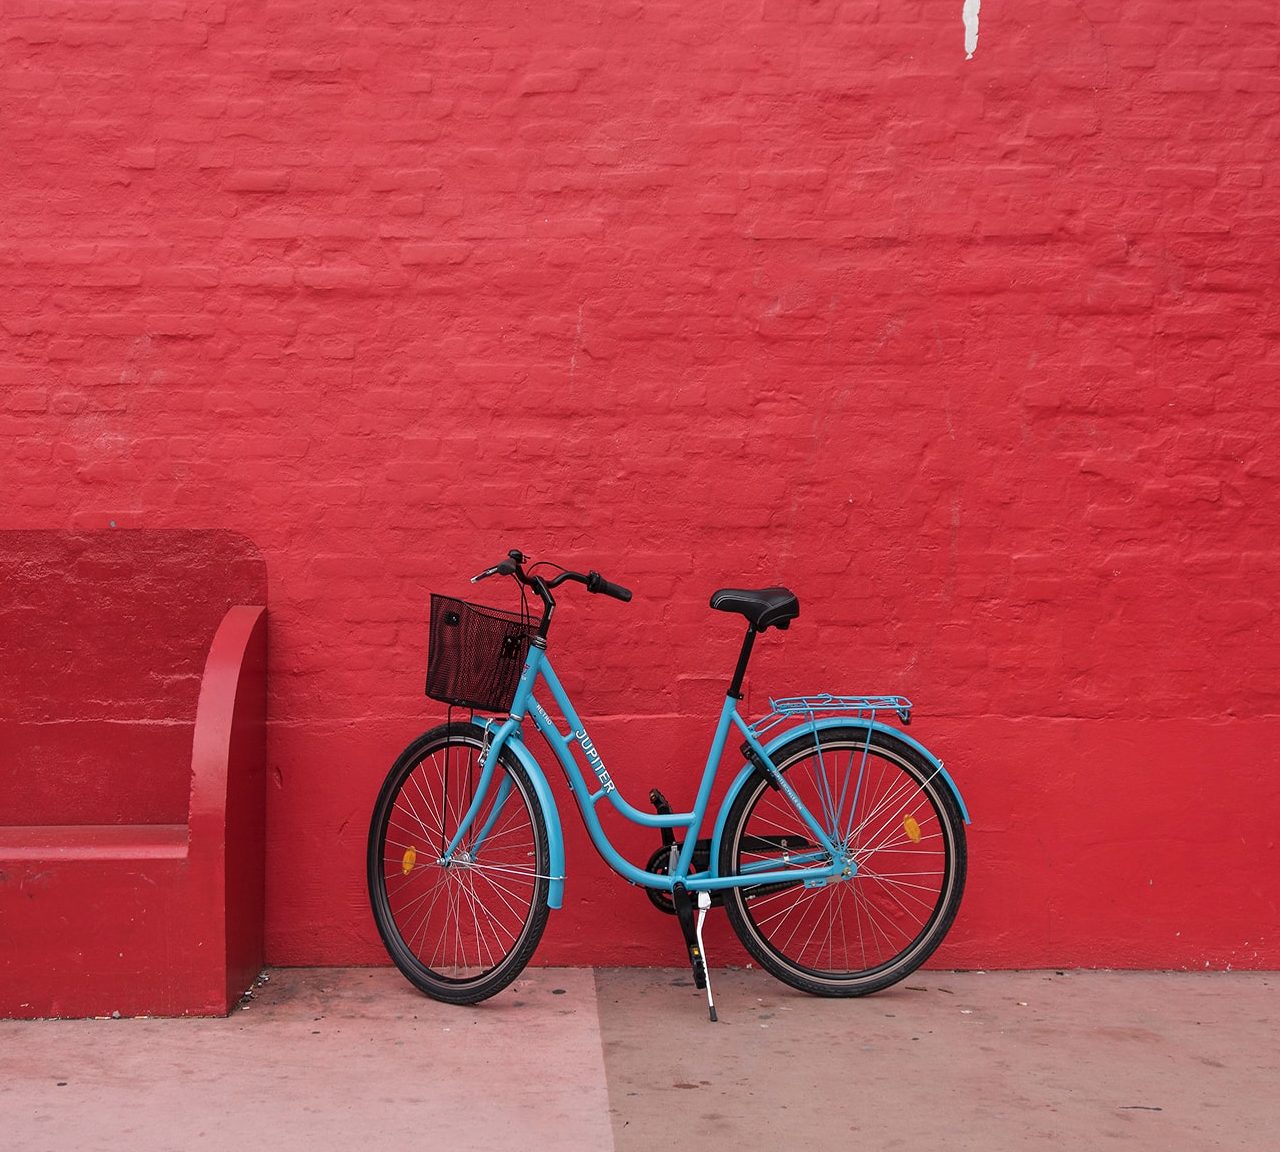 Πού θα βρεις τα πιο ποιοτικά ηλεκτρικά ποδήλατα, ιδανικά για ατελείωτες βόλτες στην πόλη